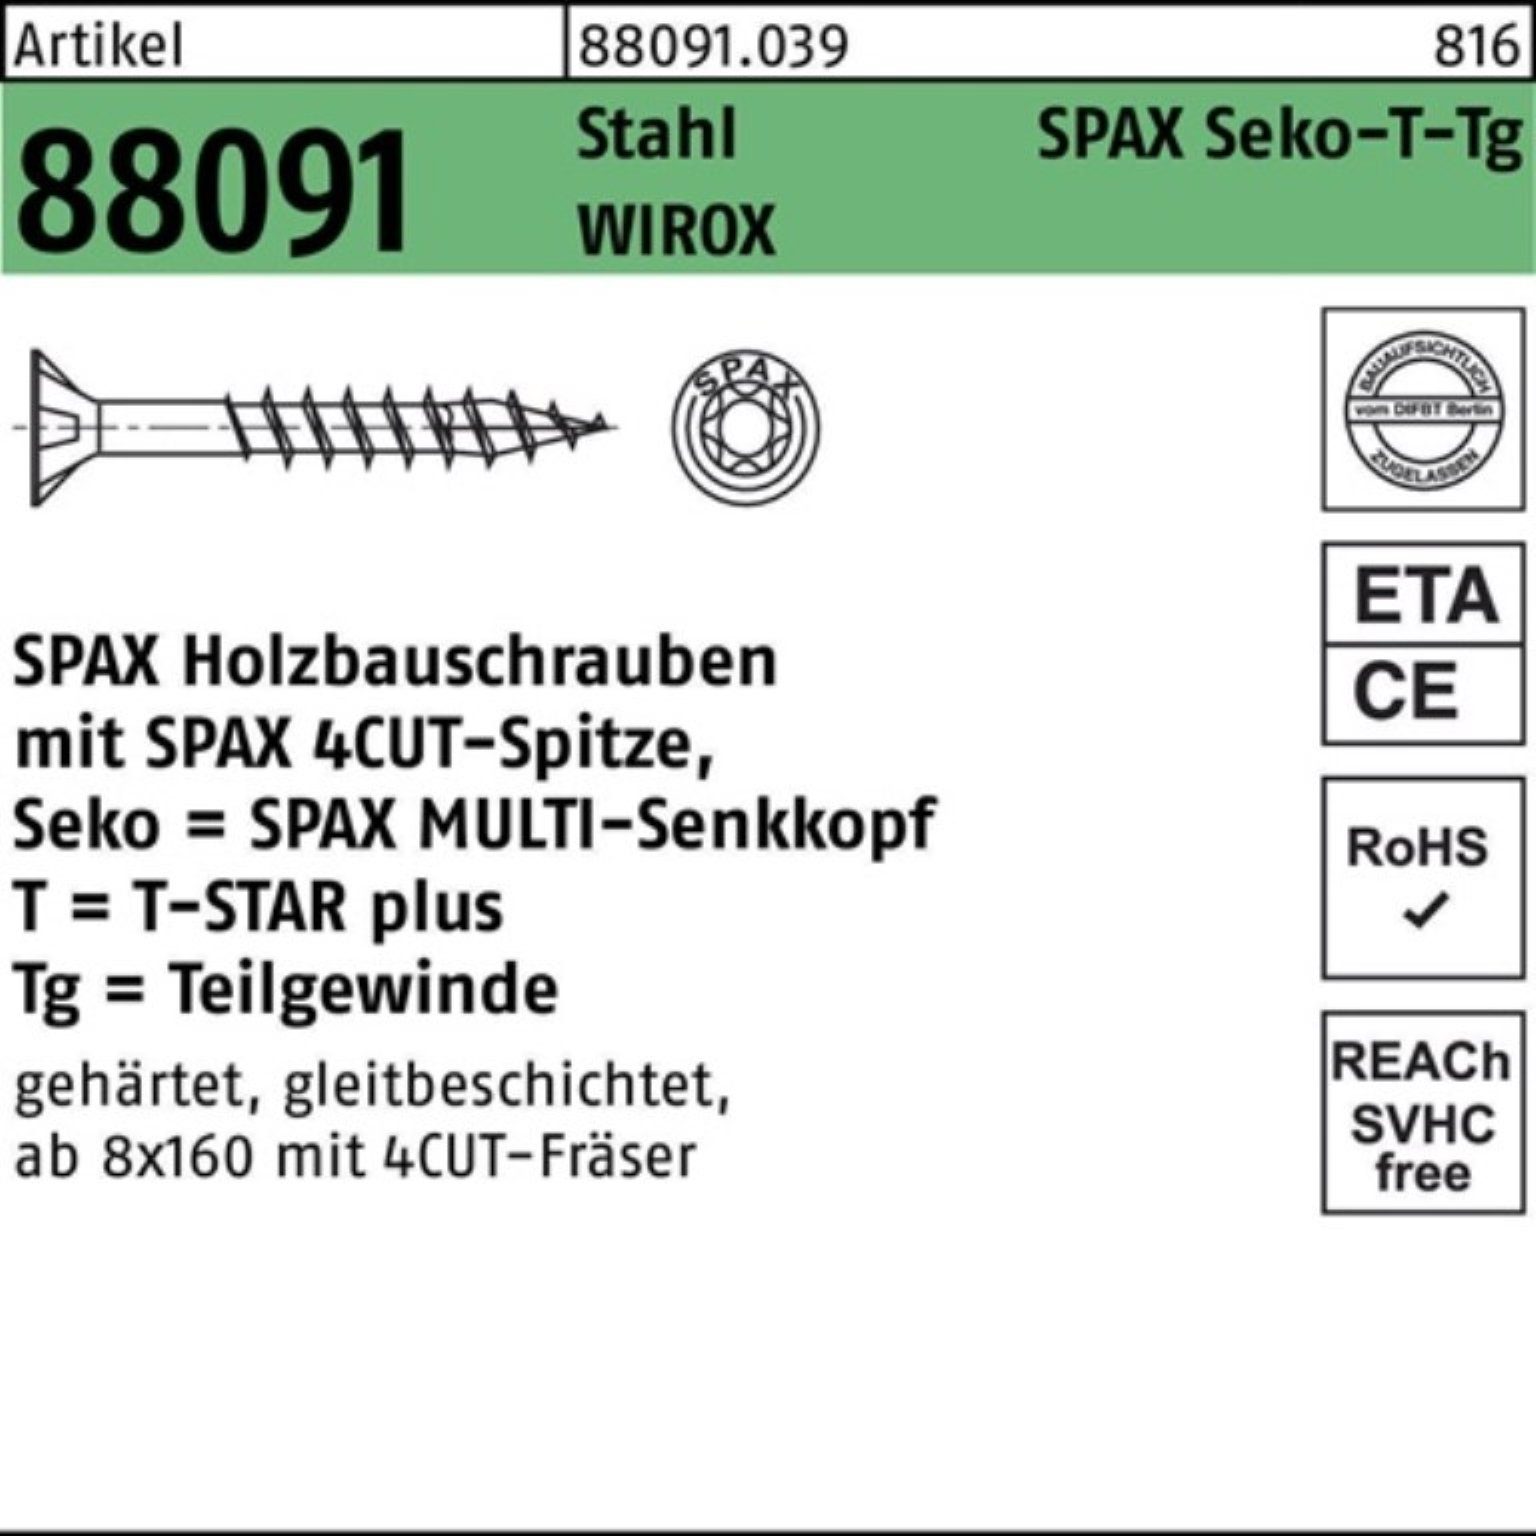 10x Pack 300/80-T50 R SEKO/T-STAR Stahl 100er Schraube SPAX Schraube 88091 TG WIROX